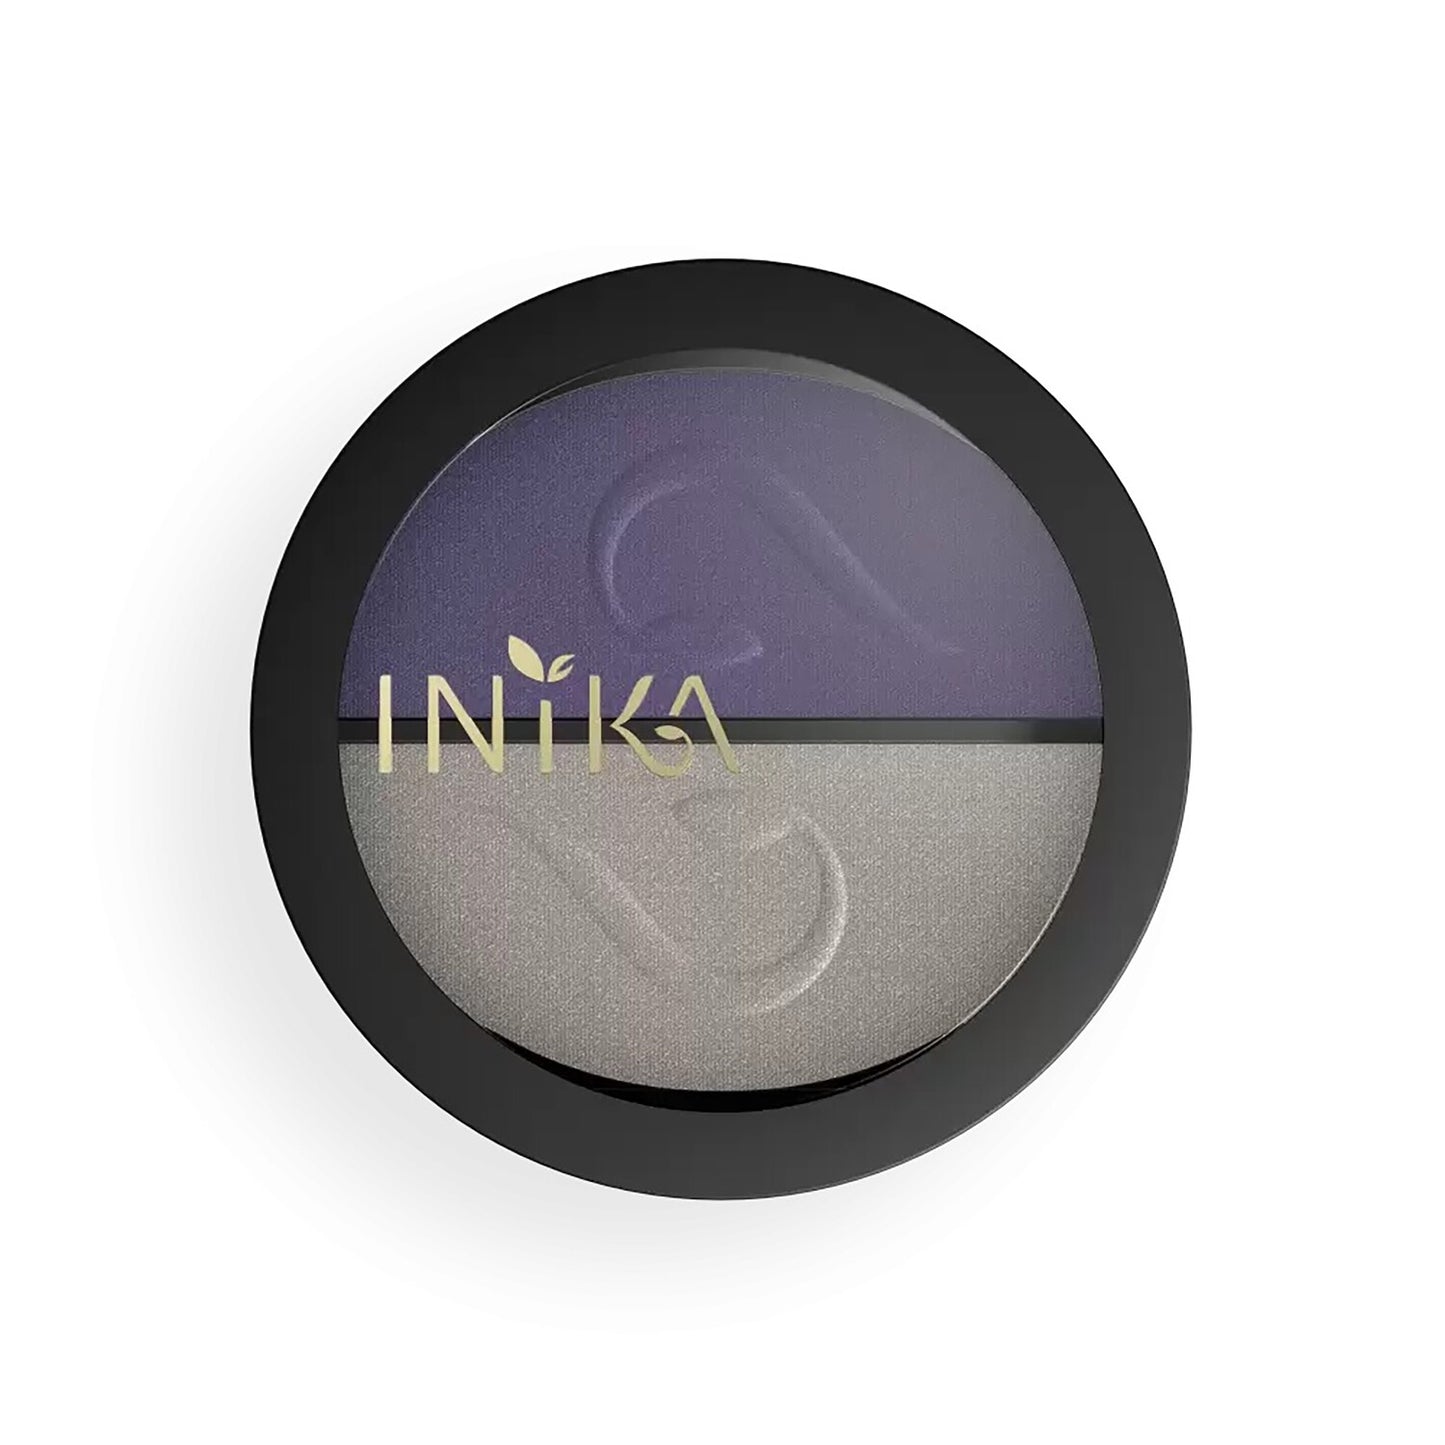 INIKA Pressed Mineral Eyeshadow Duo